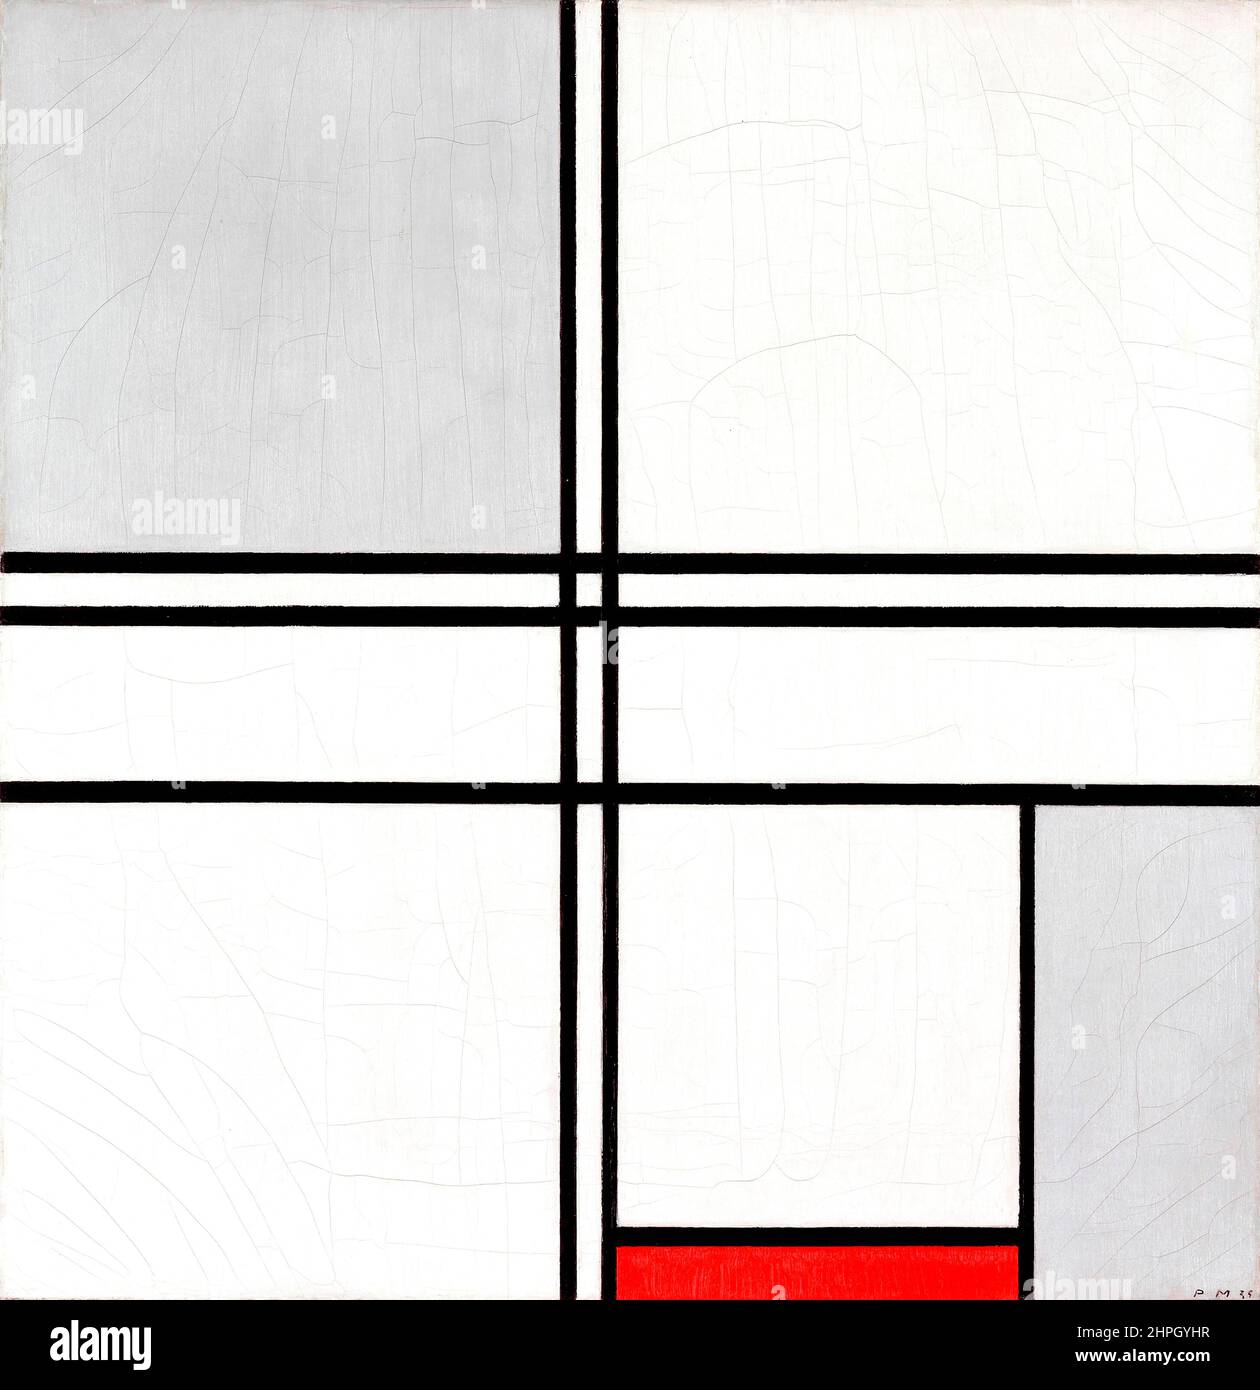 Zusammensetzung (Nr. 1) Grau-Rot von Piet Mondrian (Mondriaan) (1872-1944), Öl auf Leinwand, 1935 Stockfoto